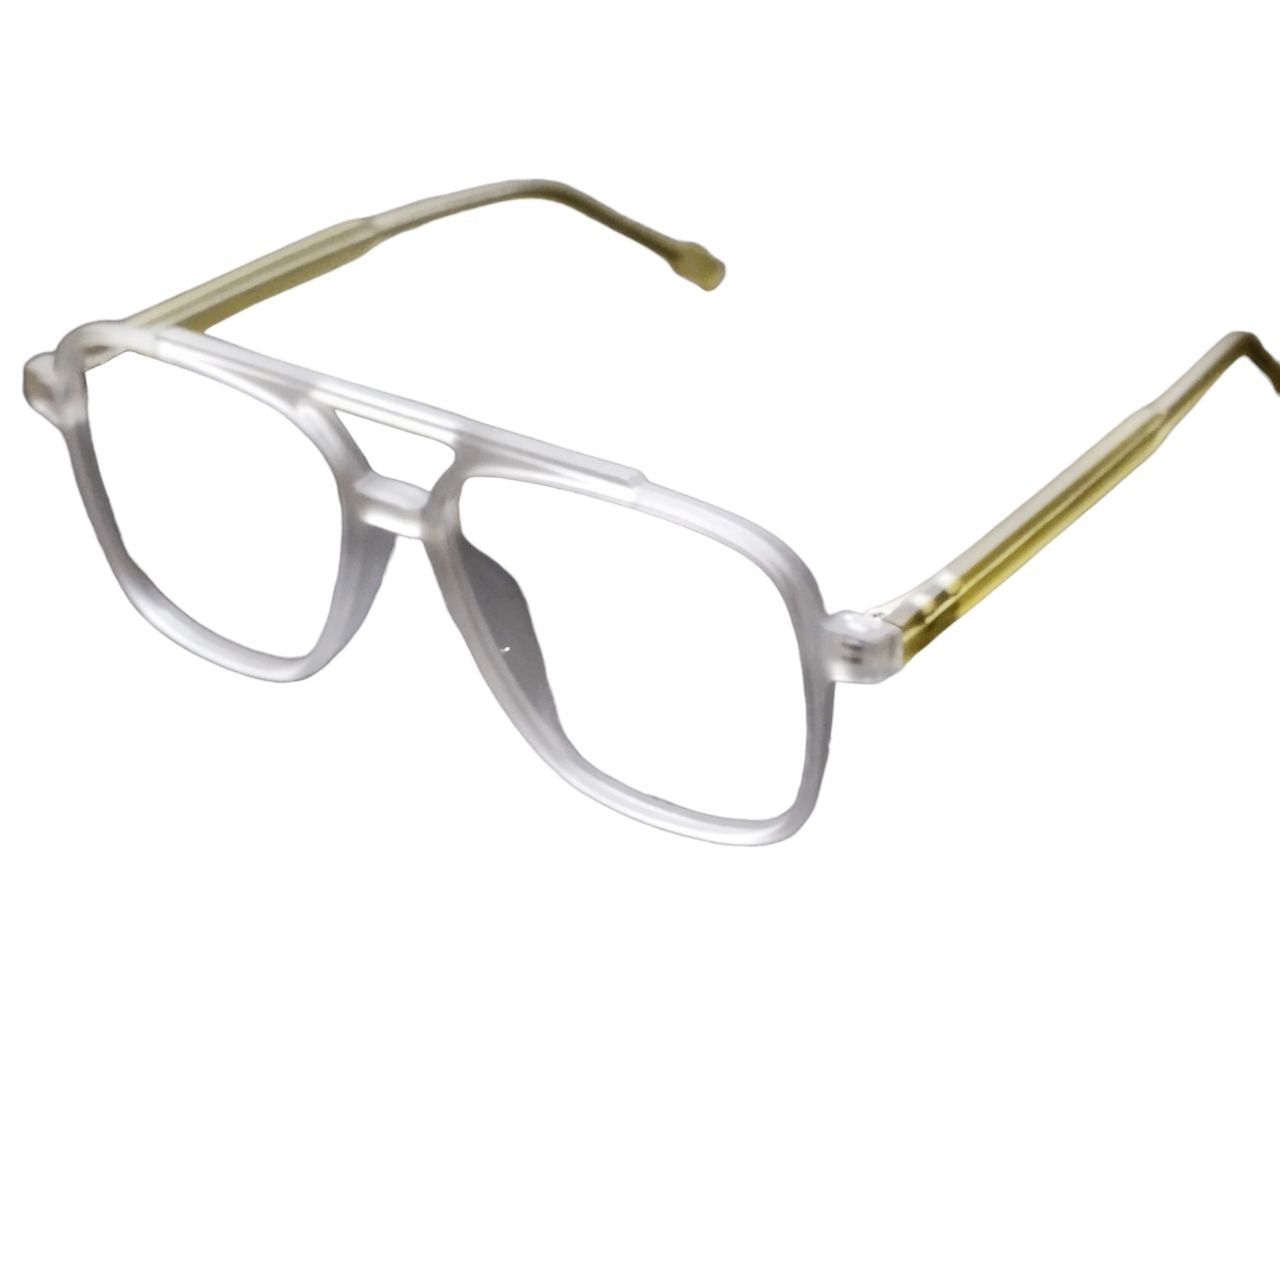 Matt White Transparent Glasses for Men and Women